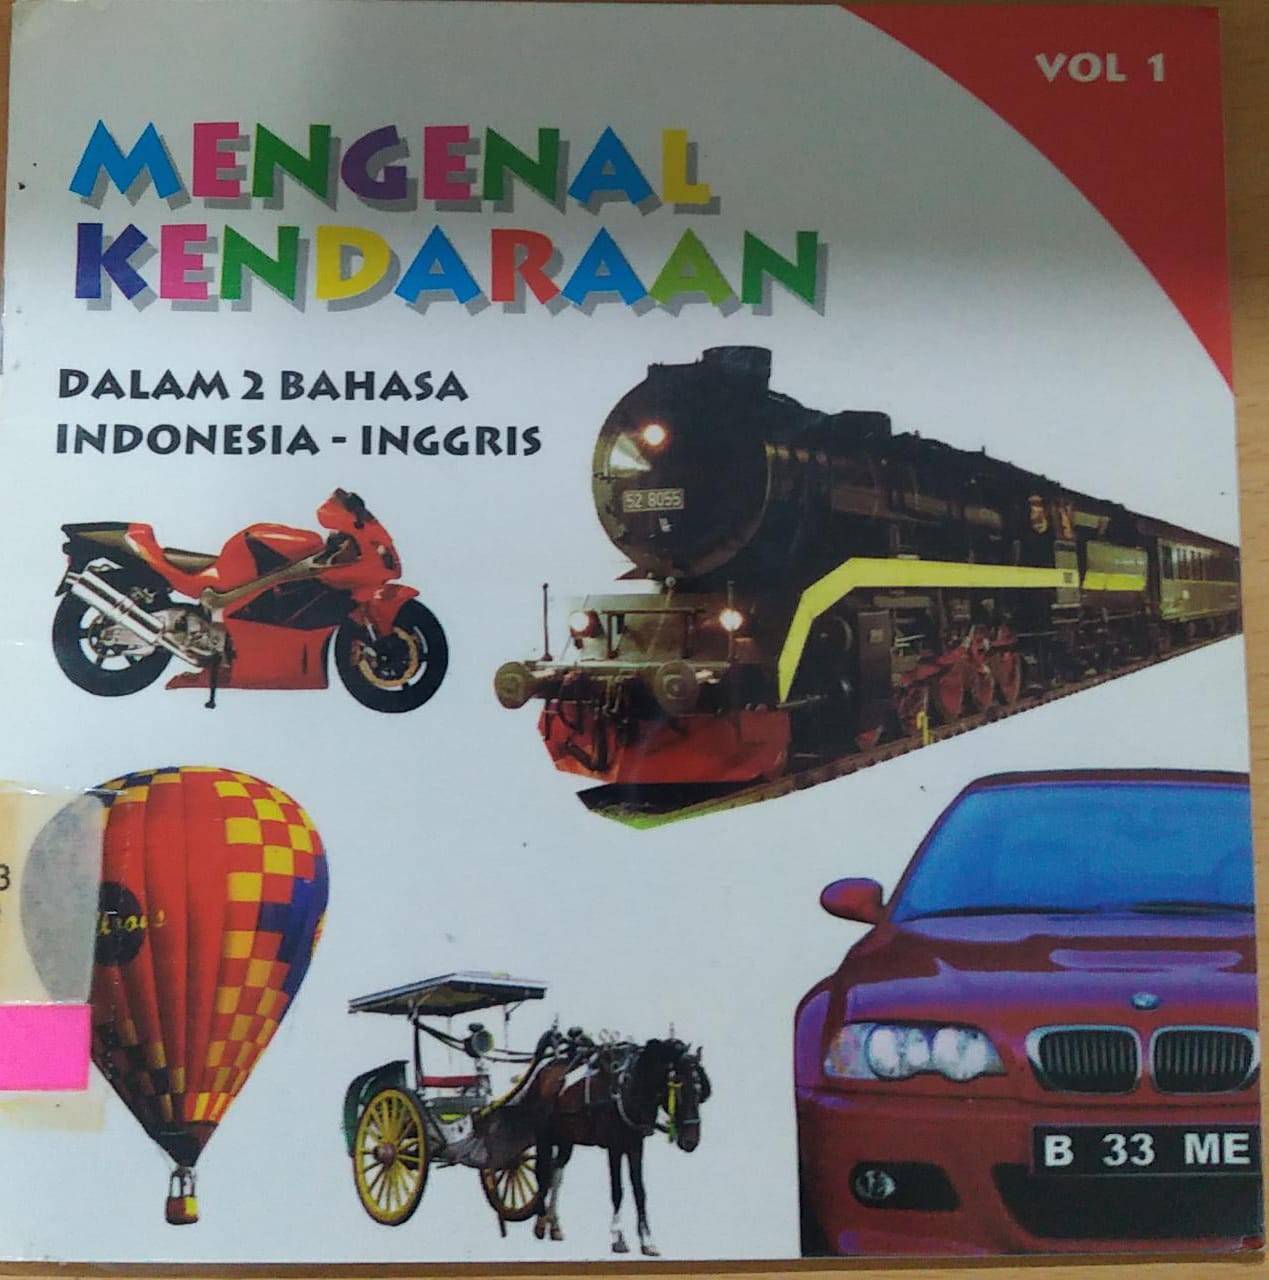 Mengenal kendaraan VOL 1 :  Dalam 2 Bahasa Indonesia - Inggris